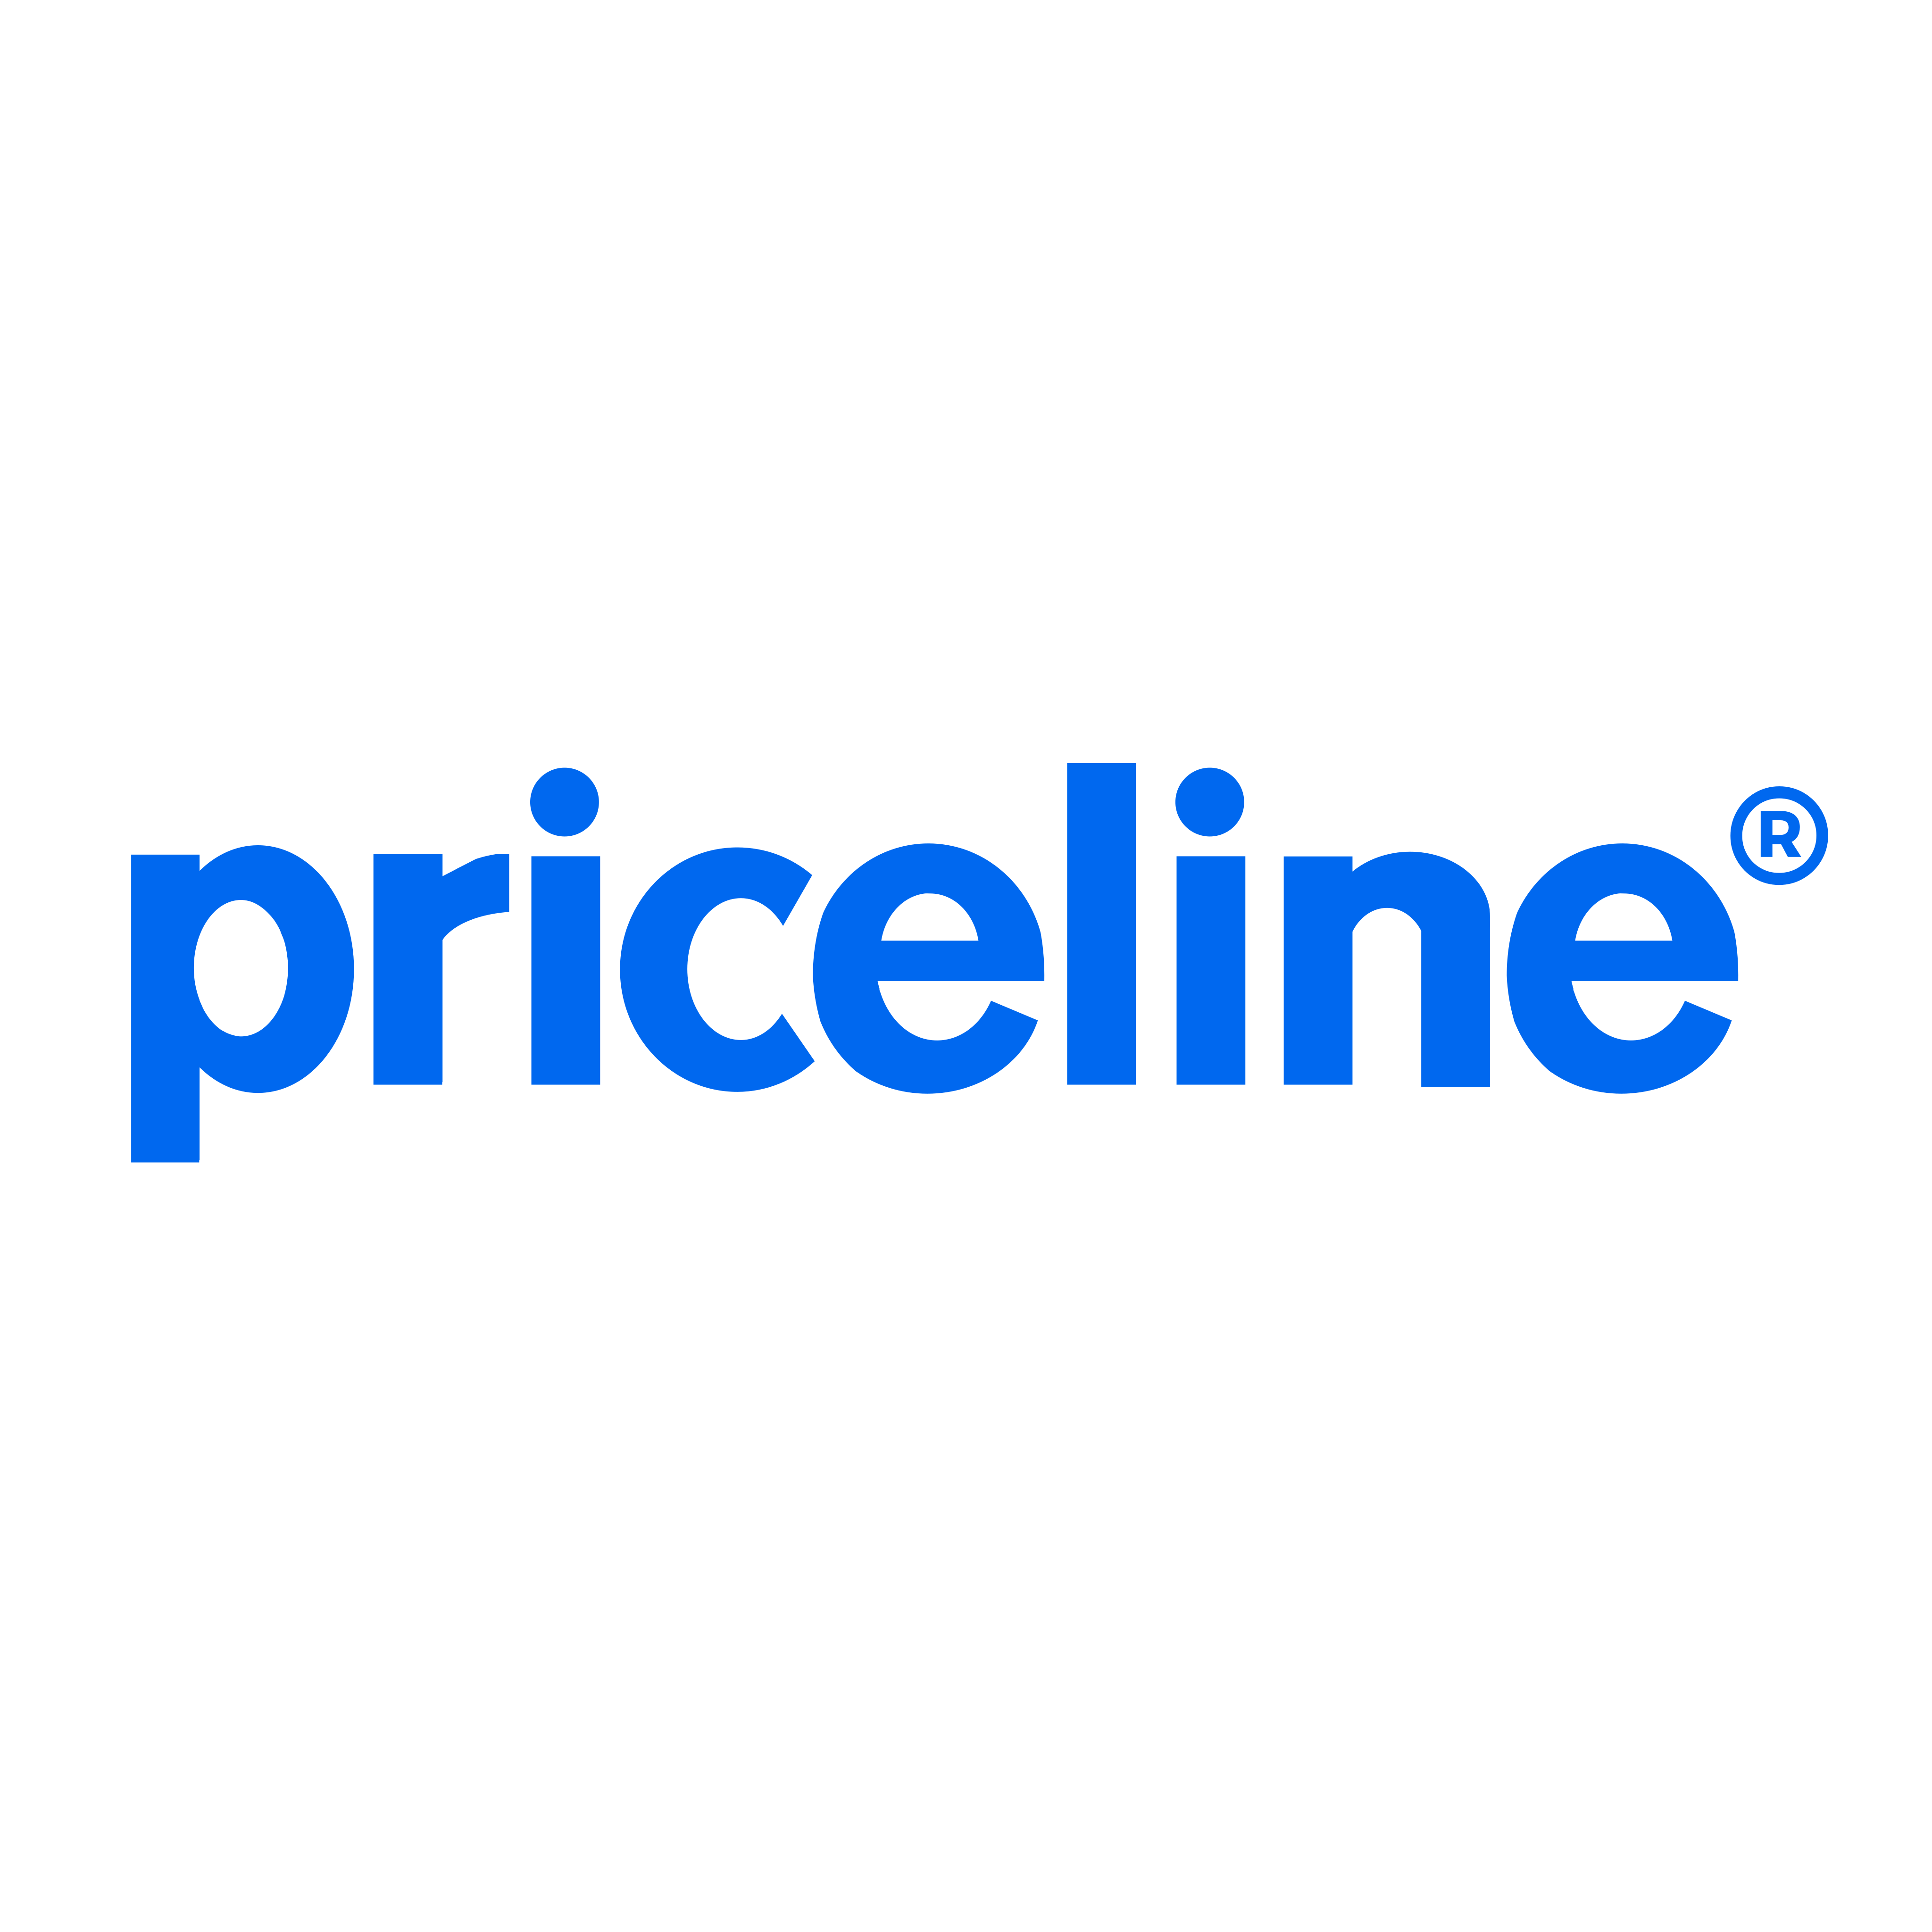 priceline logo 0 - Priceline Logo